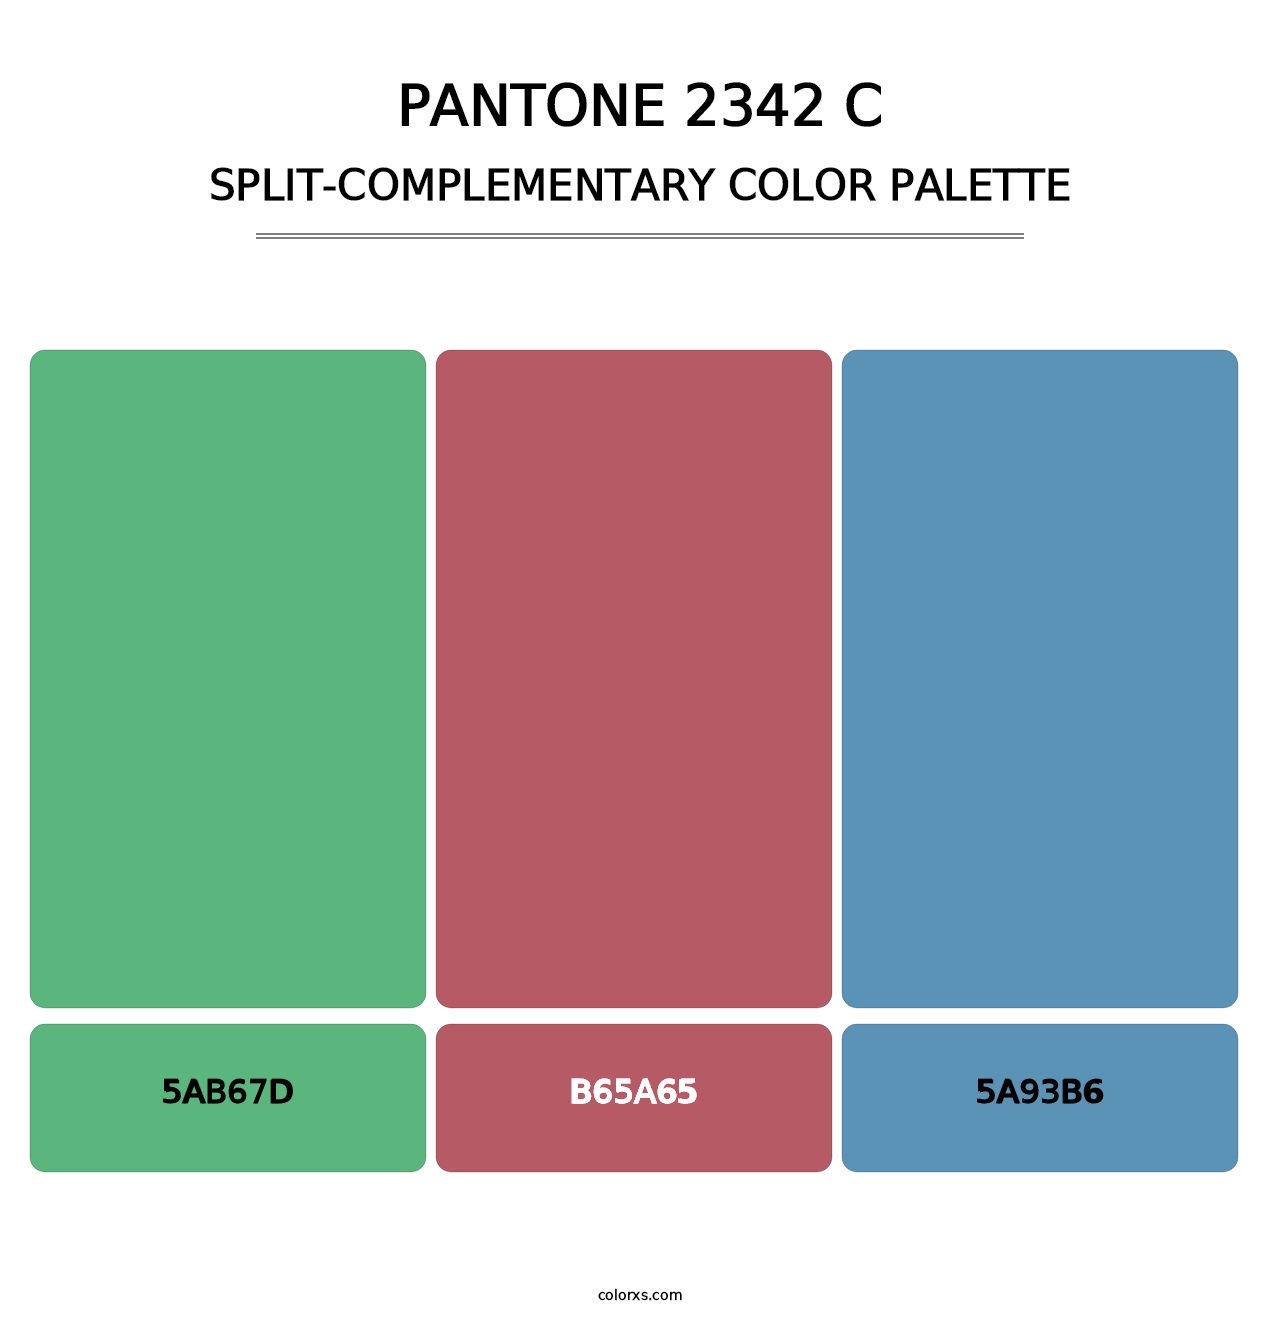 PANTONE 2342 C - Split-Complementary Color Palette